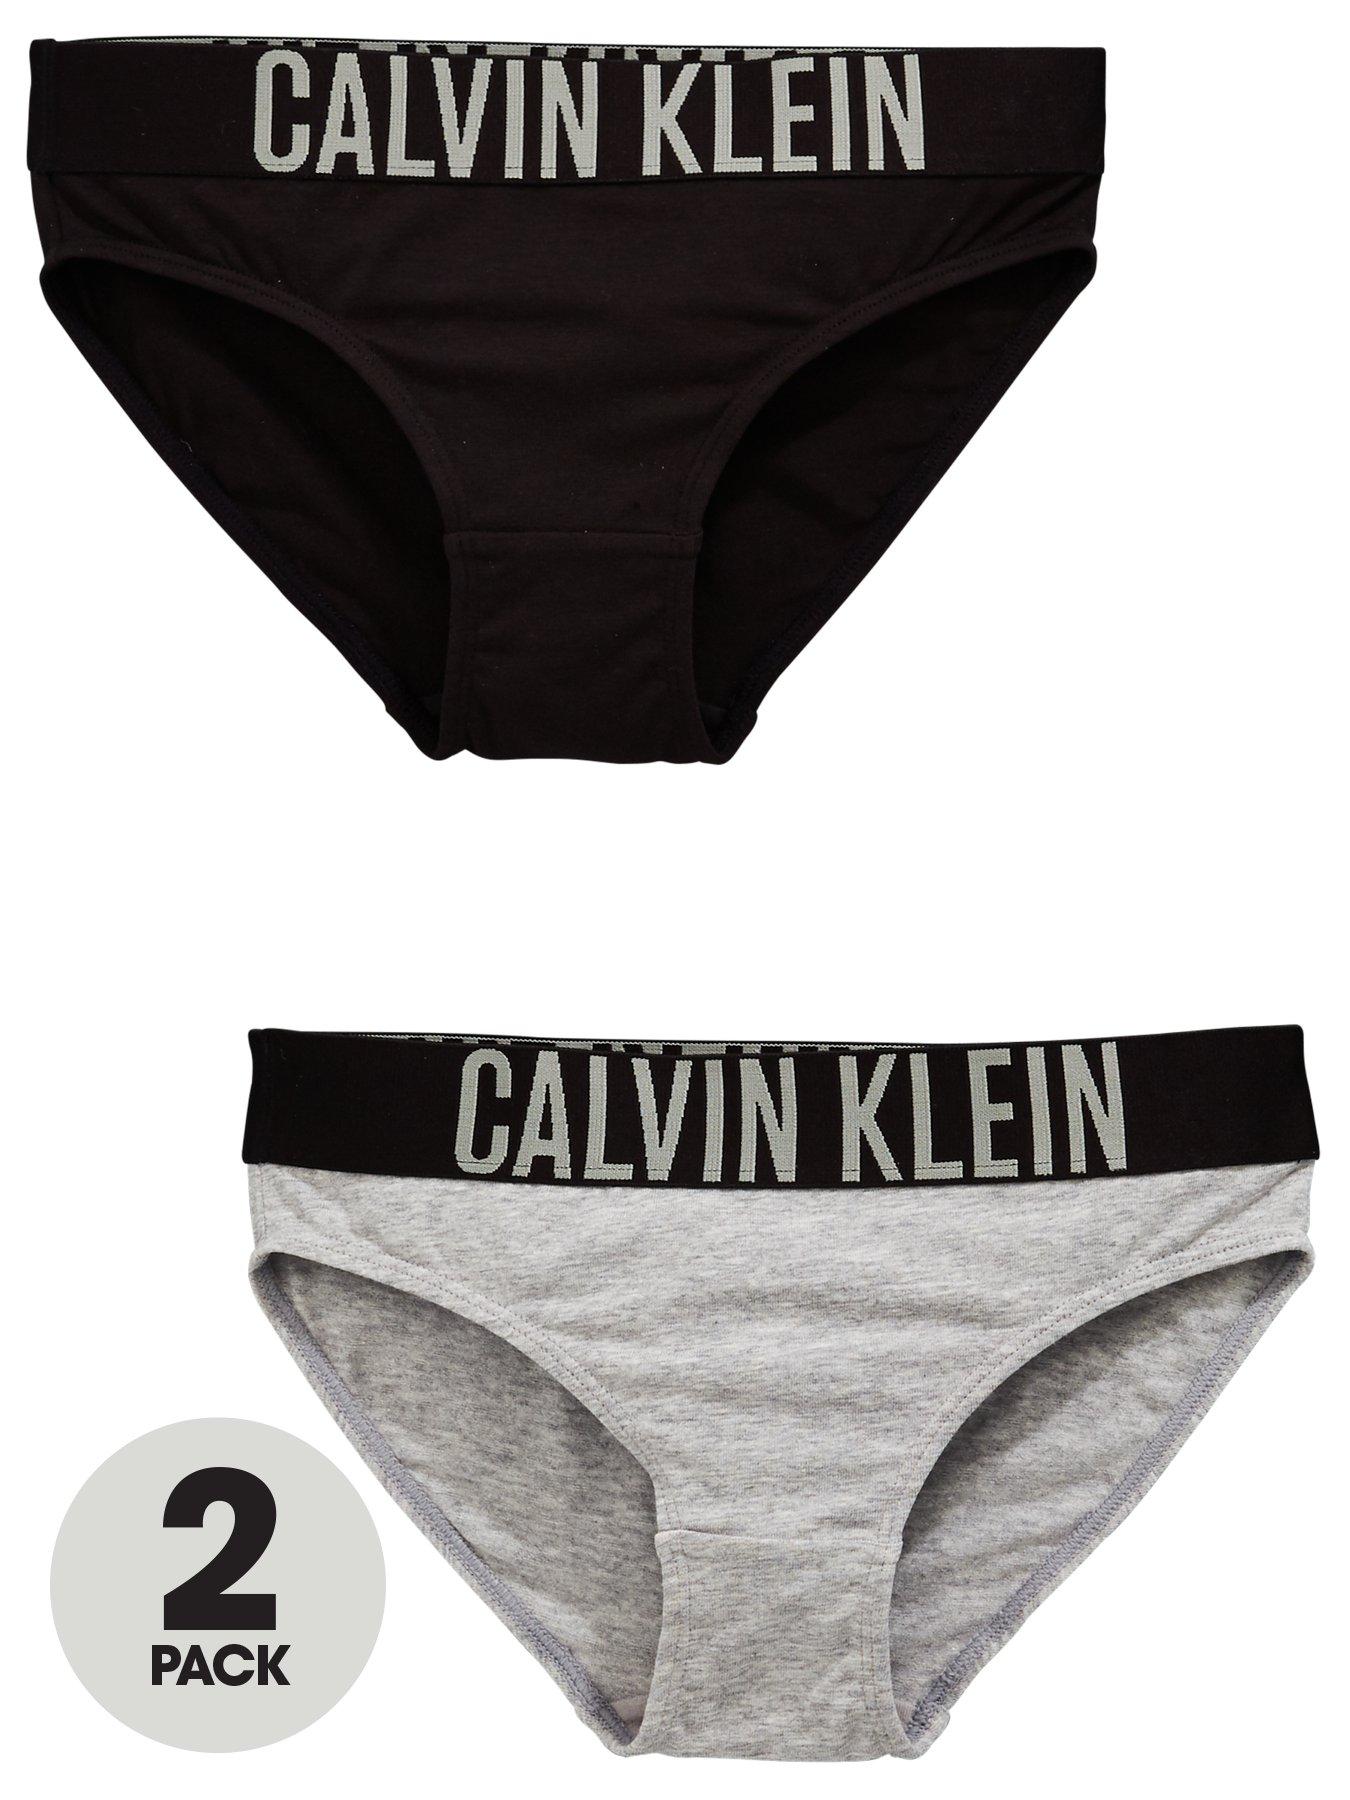 Calvin Klein Girls 2 Pack Bralettes - White/Black